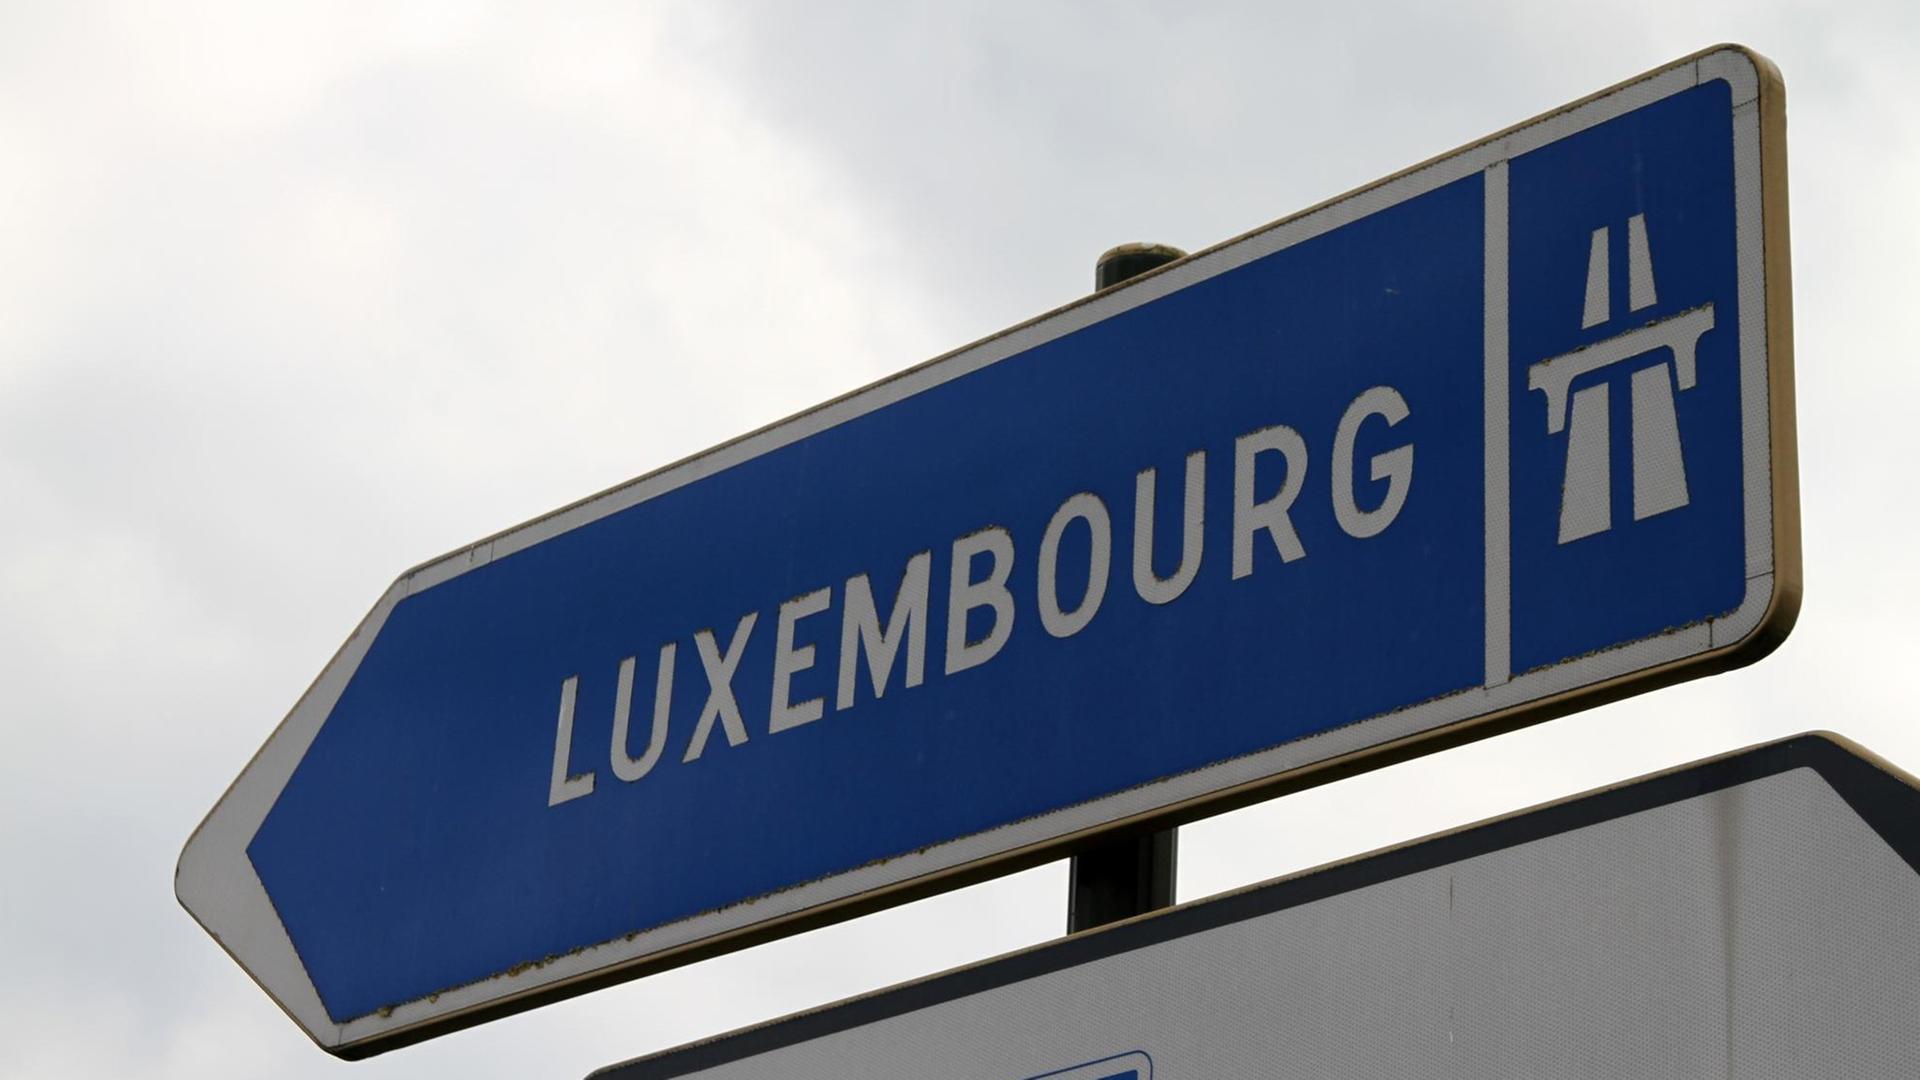 Autobahnschild Luxembourg, aufgenommen am 30.08.2011.